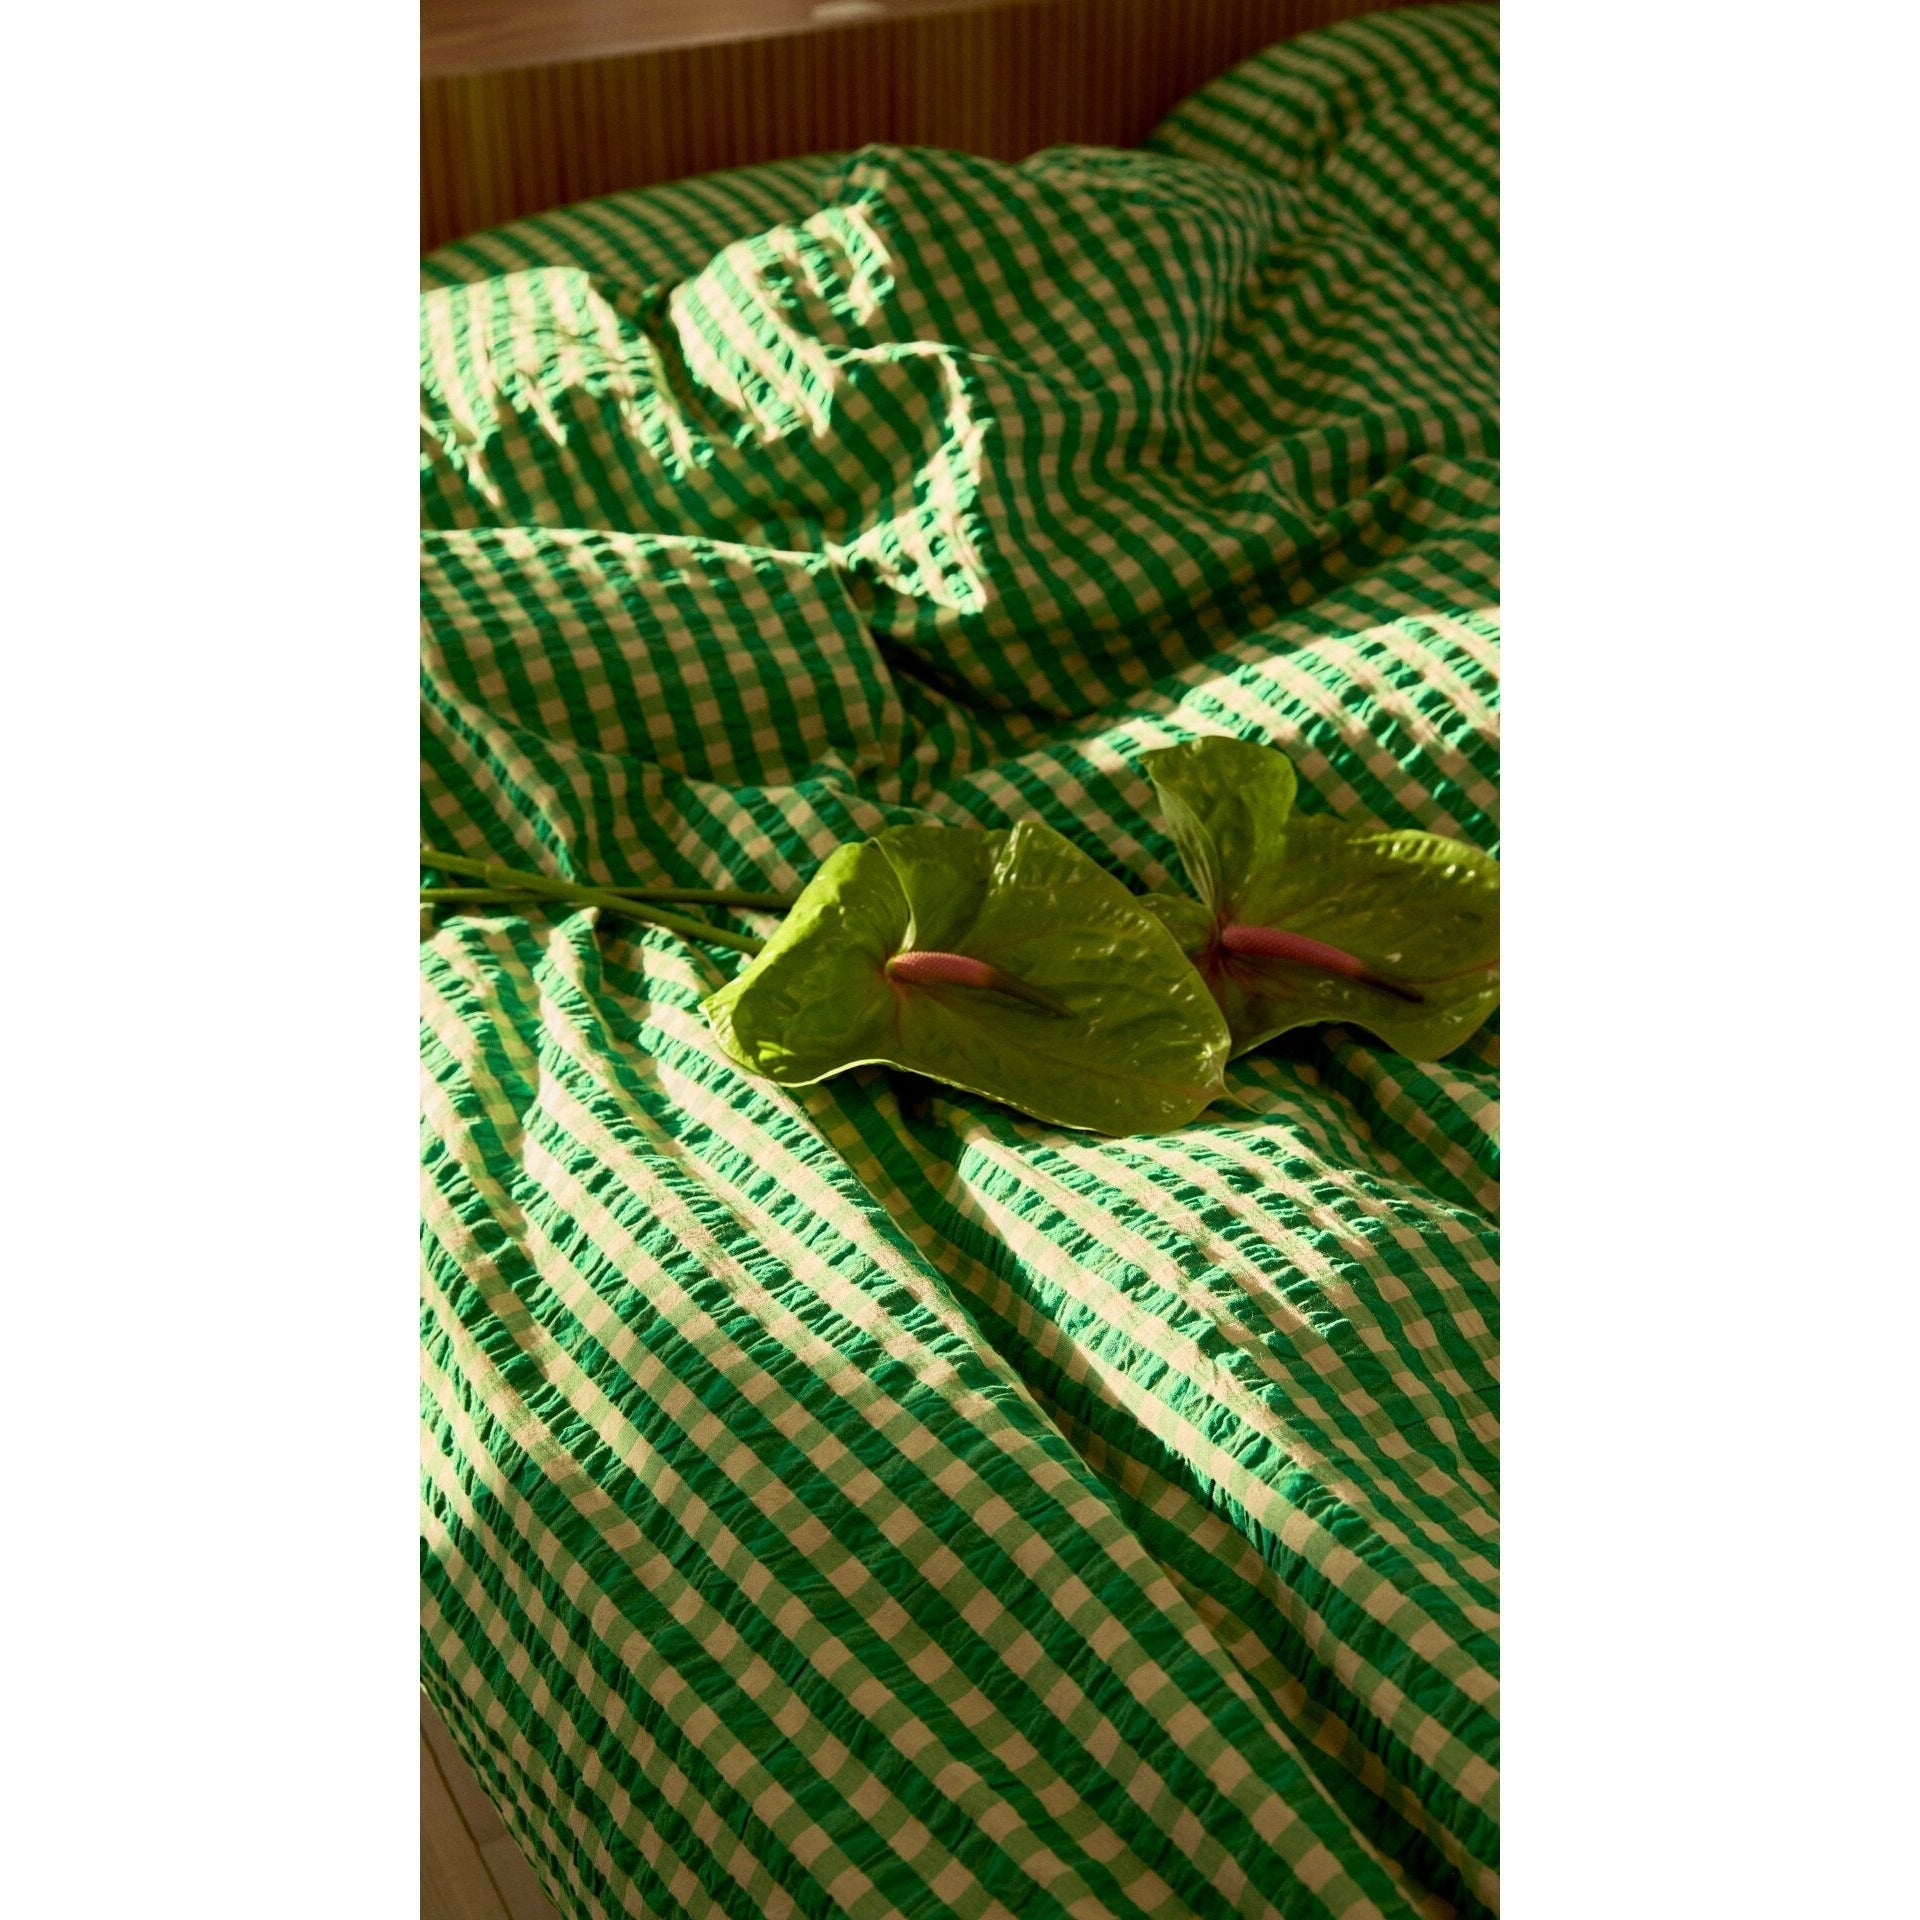 Juna Bæk & Bølge seng lin 140x220 cm, grønn/sand